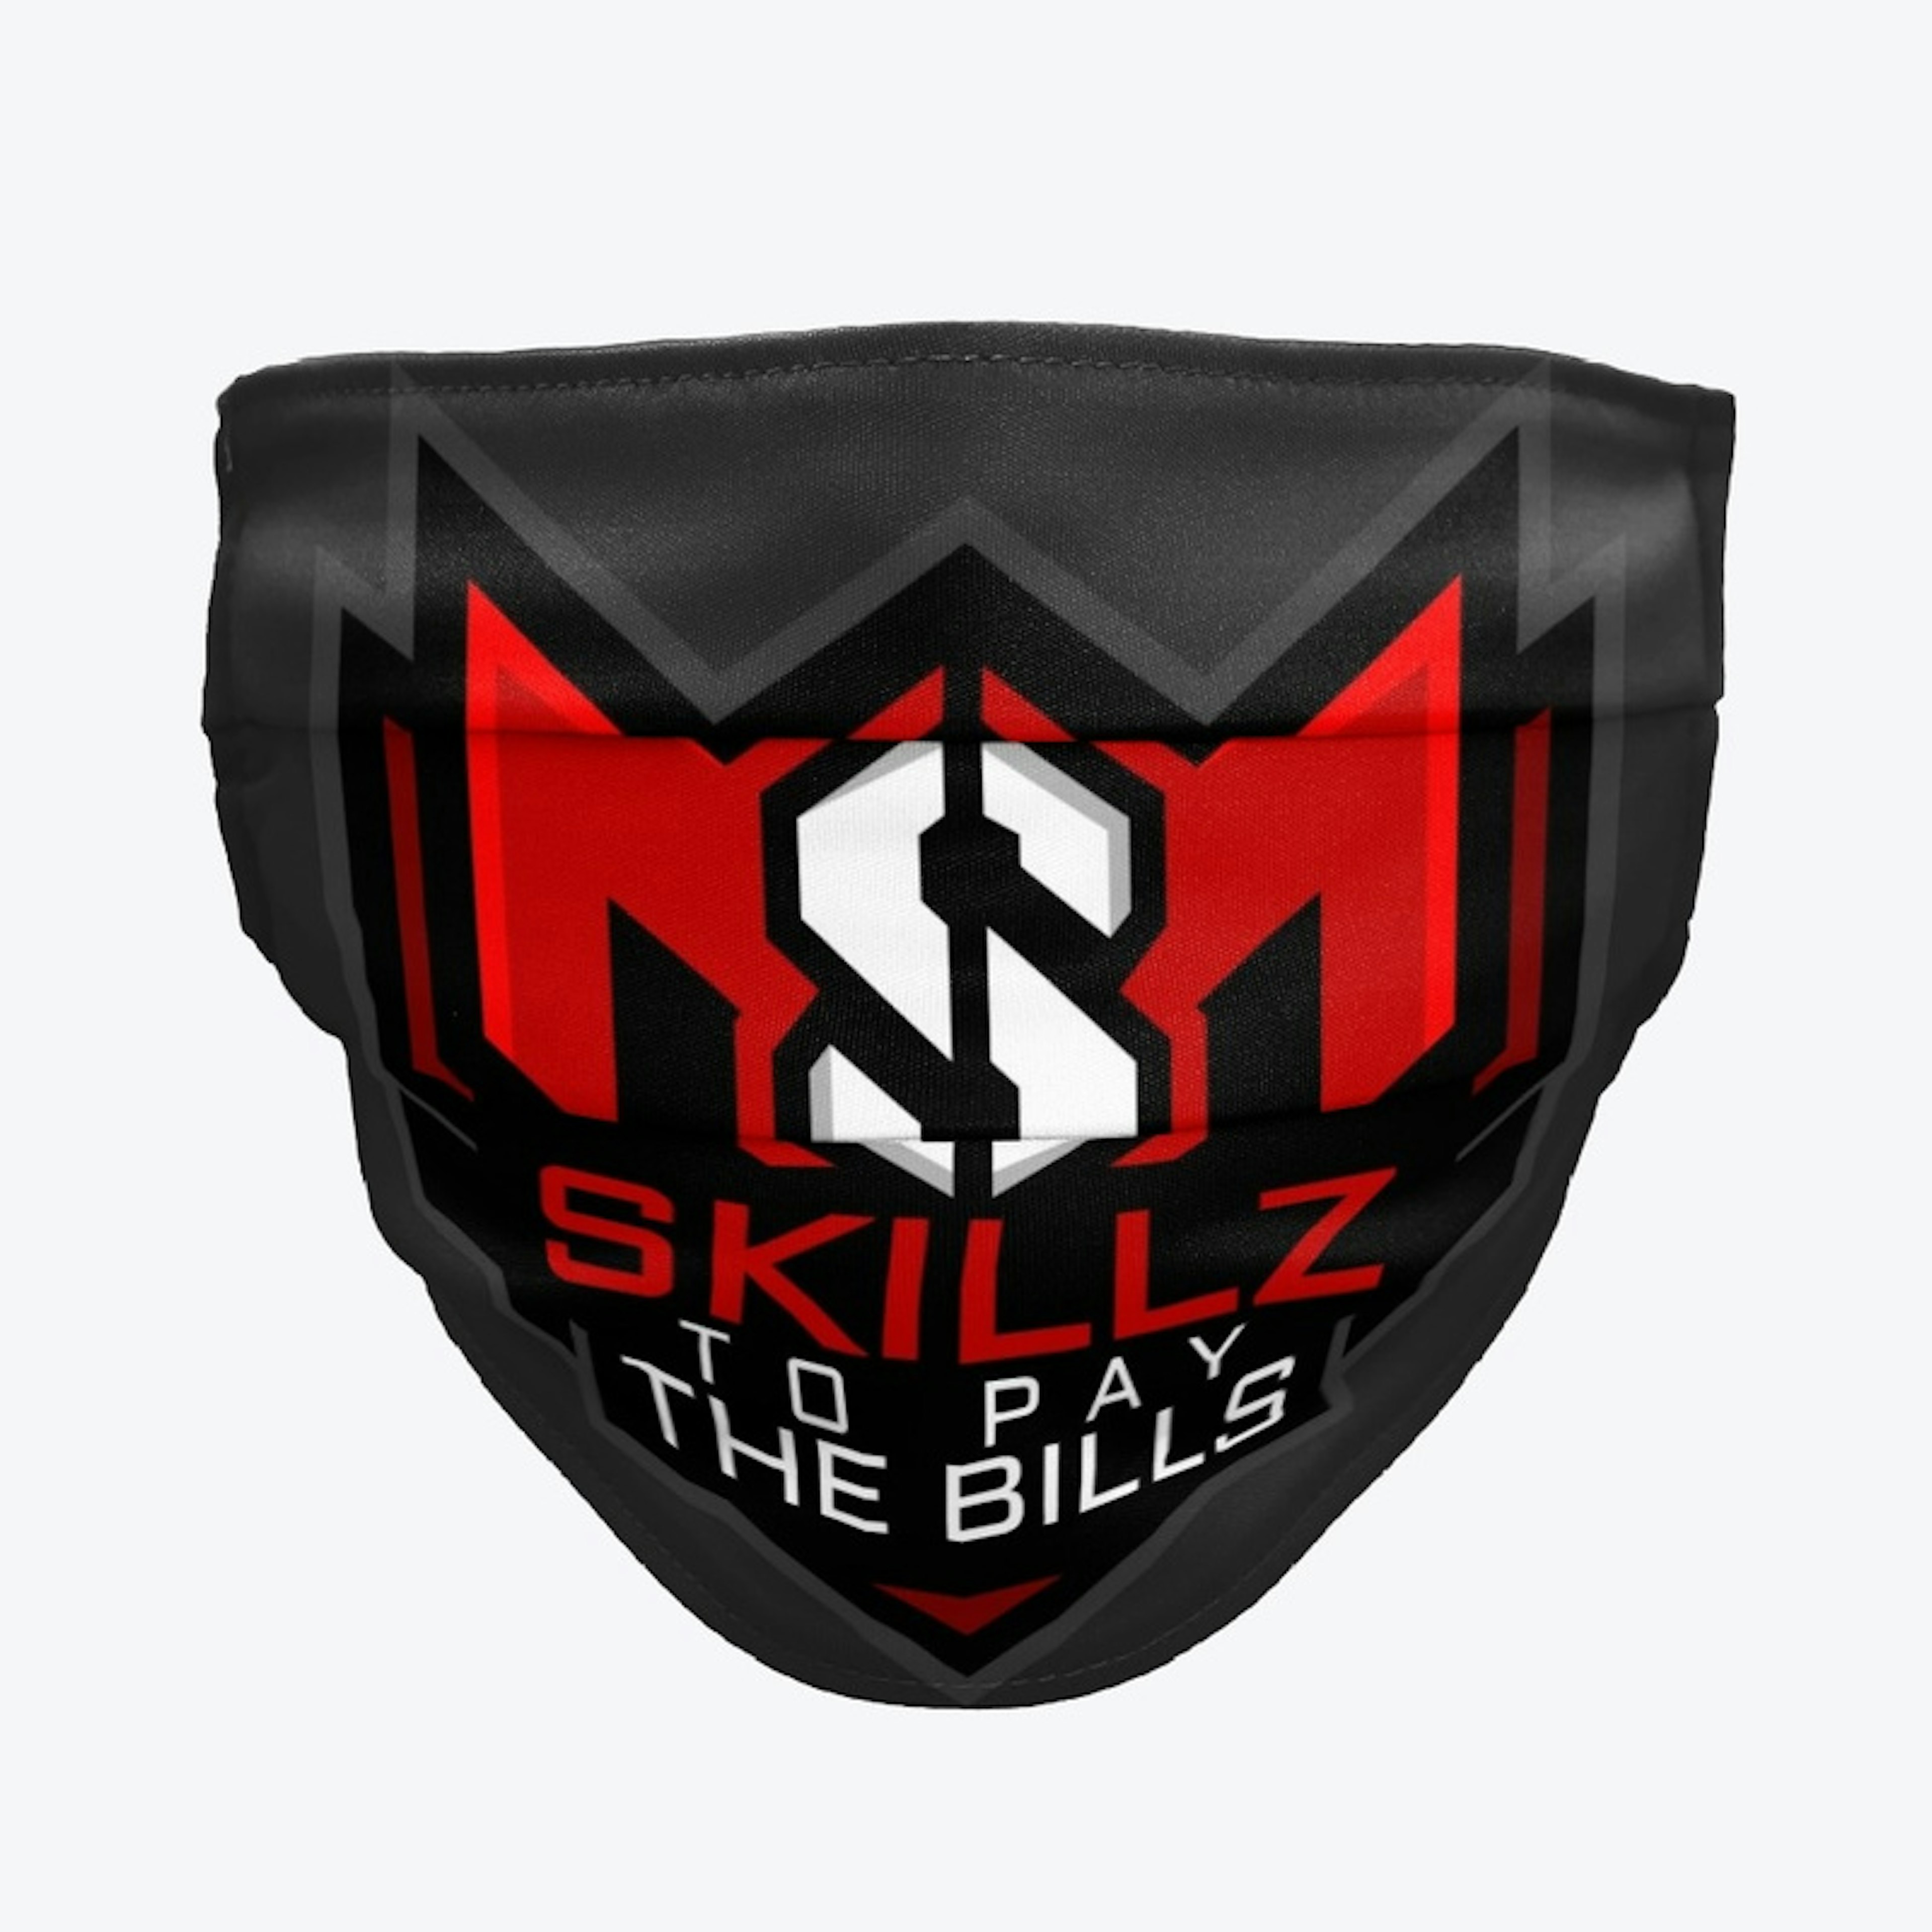 Skillz to Pay The Bills v2